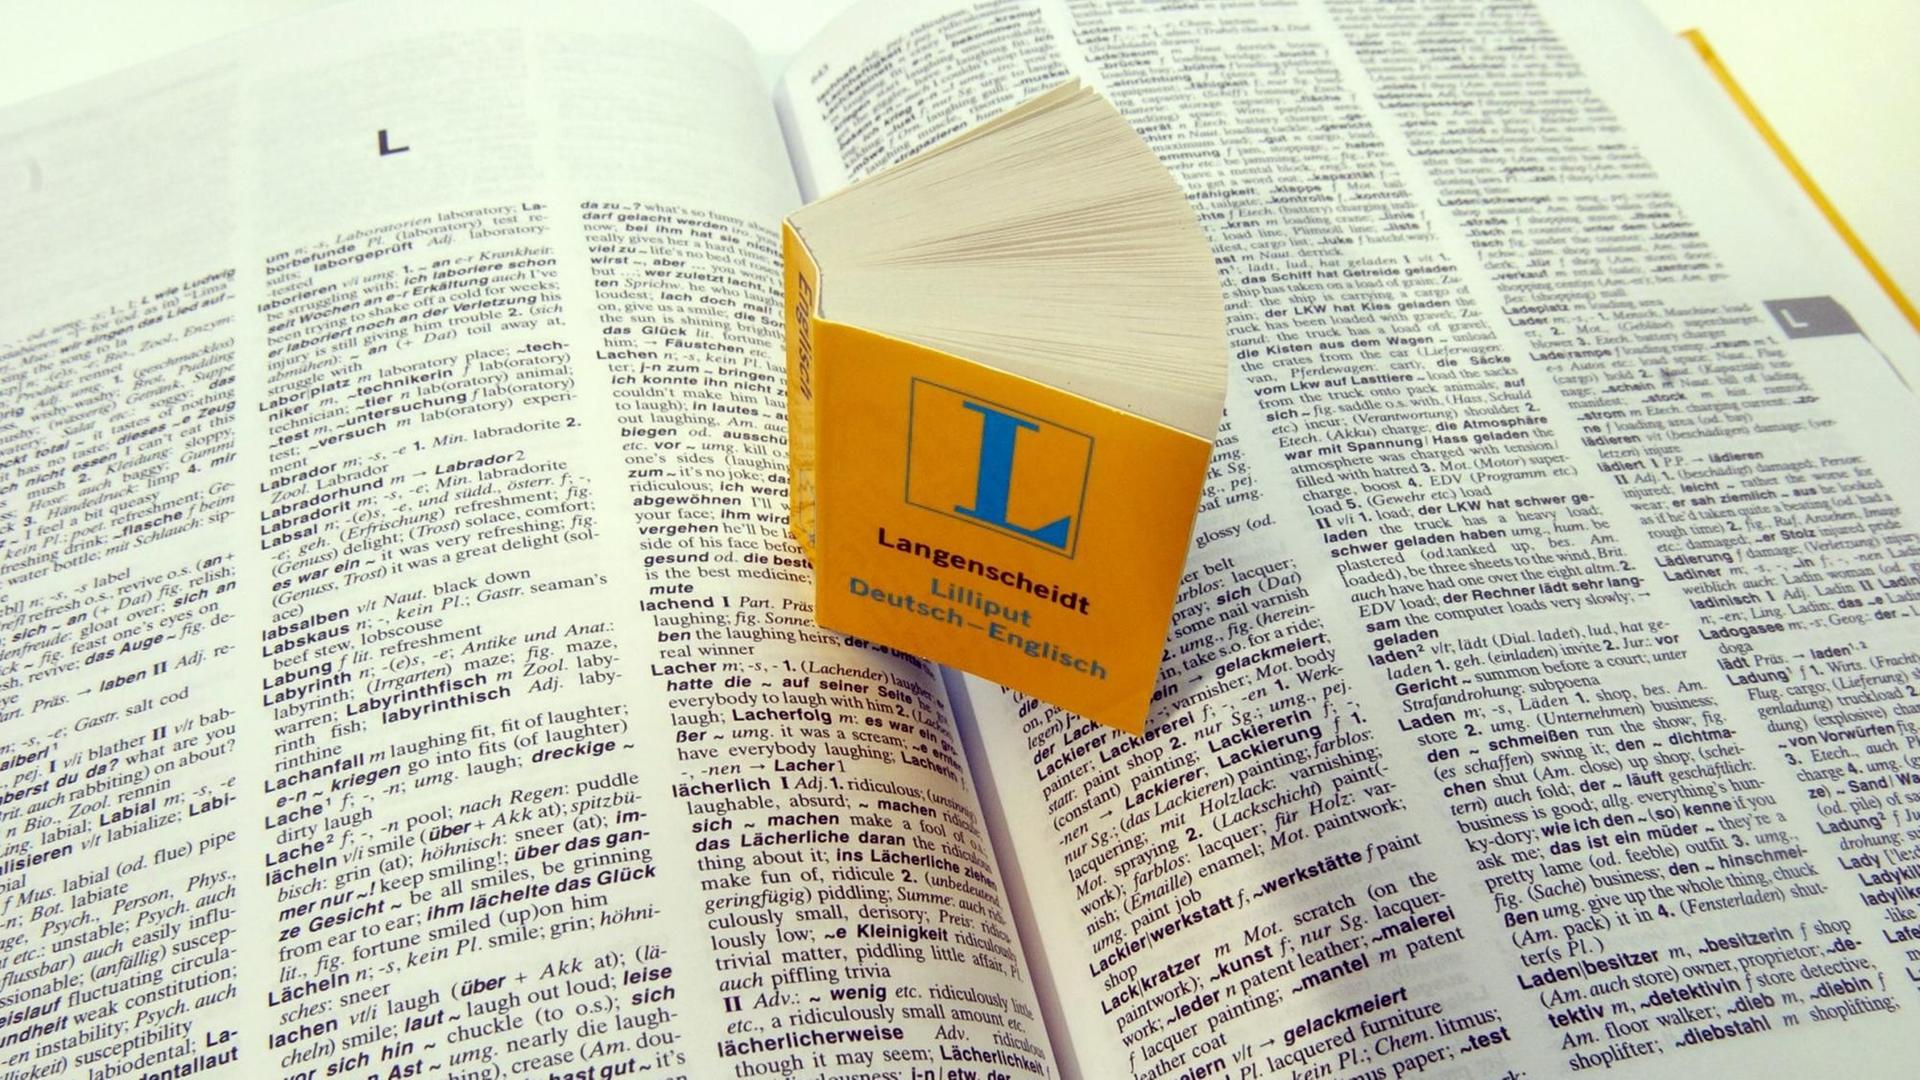 Ein Miniatur-Wörterbuch "Deutsch - Englisch" steht auf den aufgeschlagenen Seiten seines großen "Bruders"